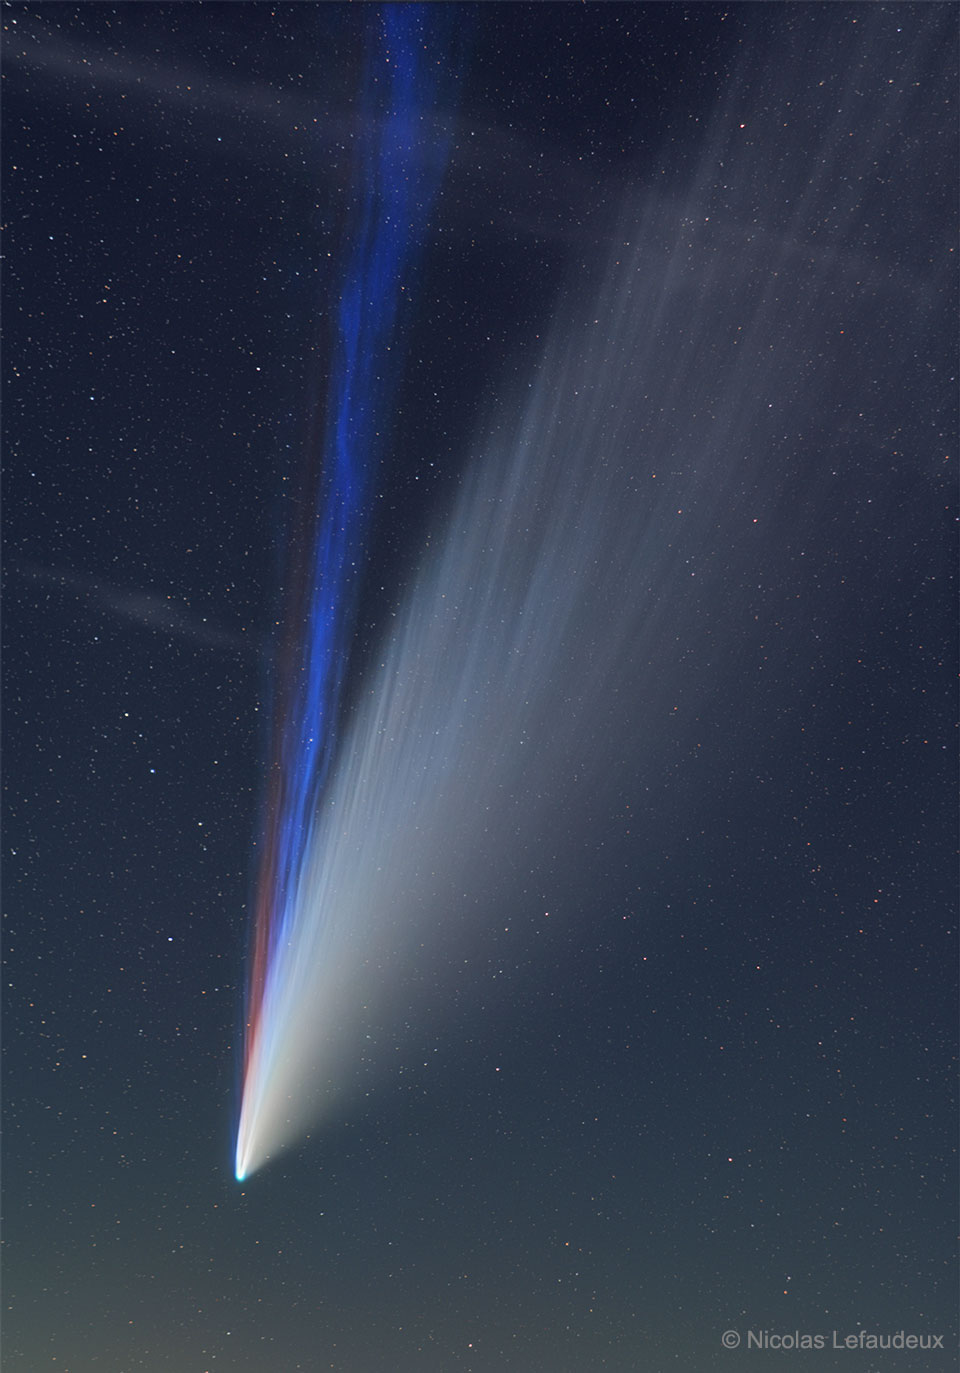 Die Schweife des Kometen C/2020 F3 (NEOWISE) mit dem schmalen rötlichen Natrium-Schweif.